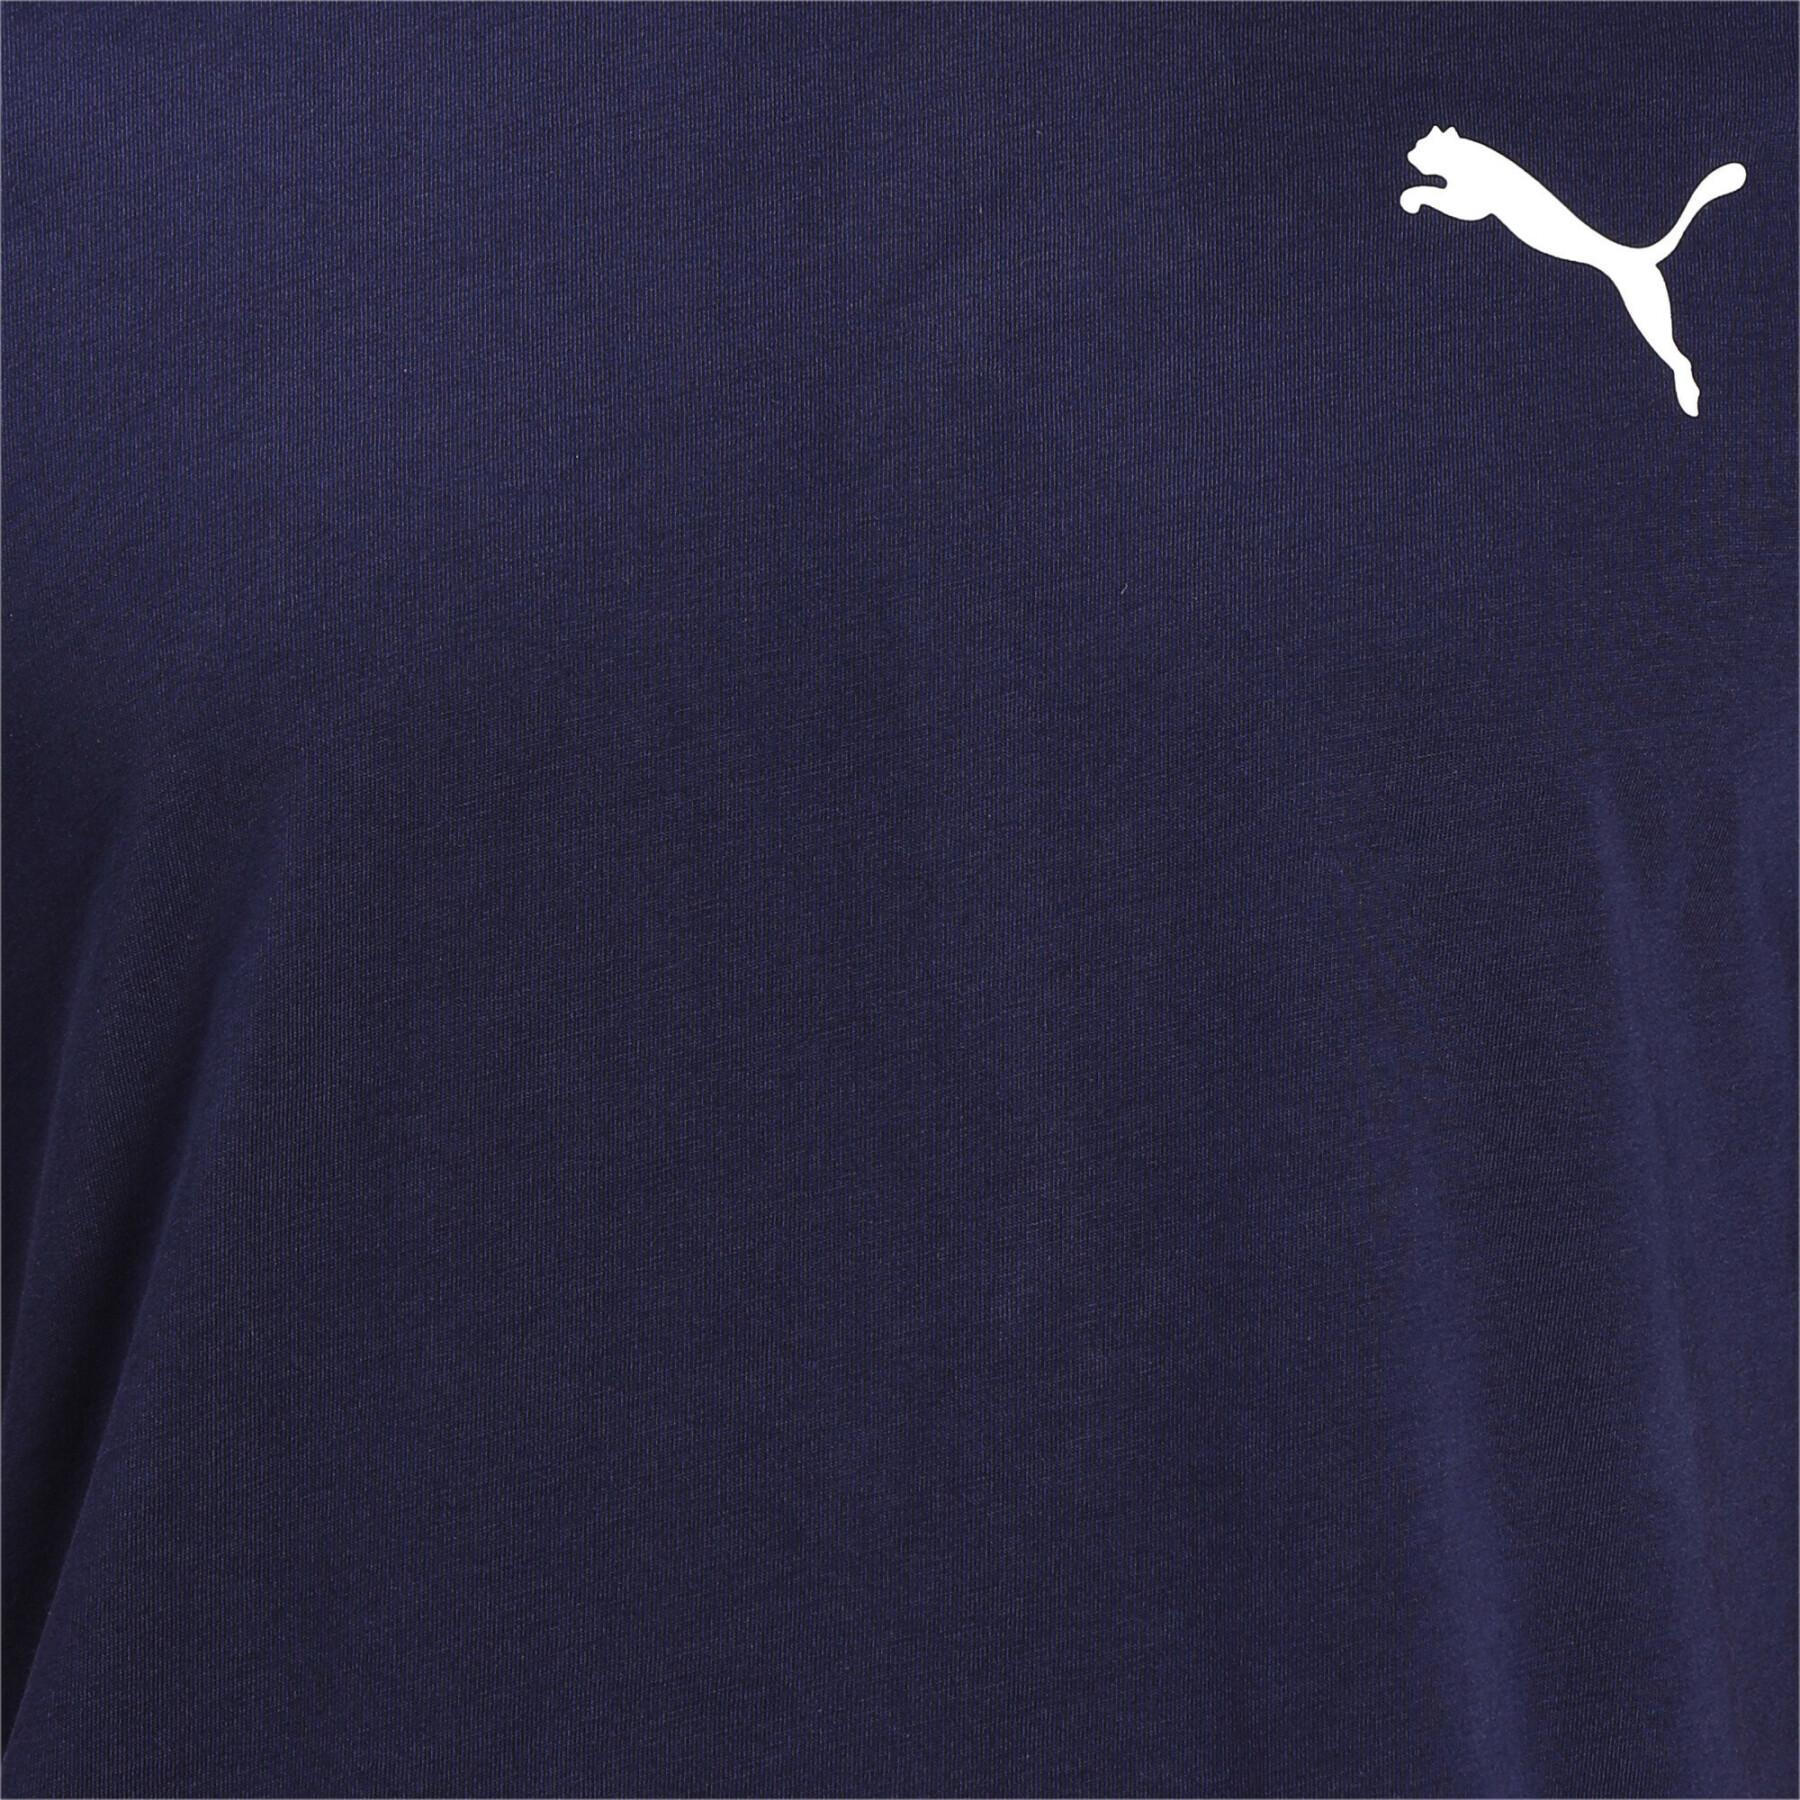 T-Shirt Puma